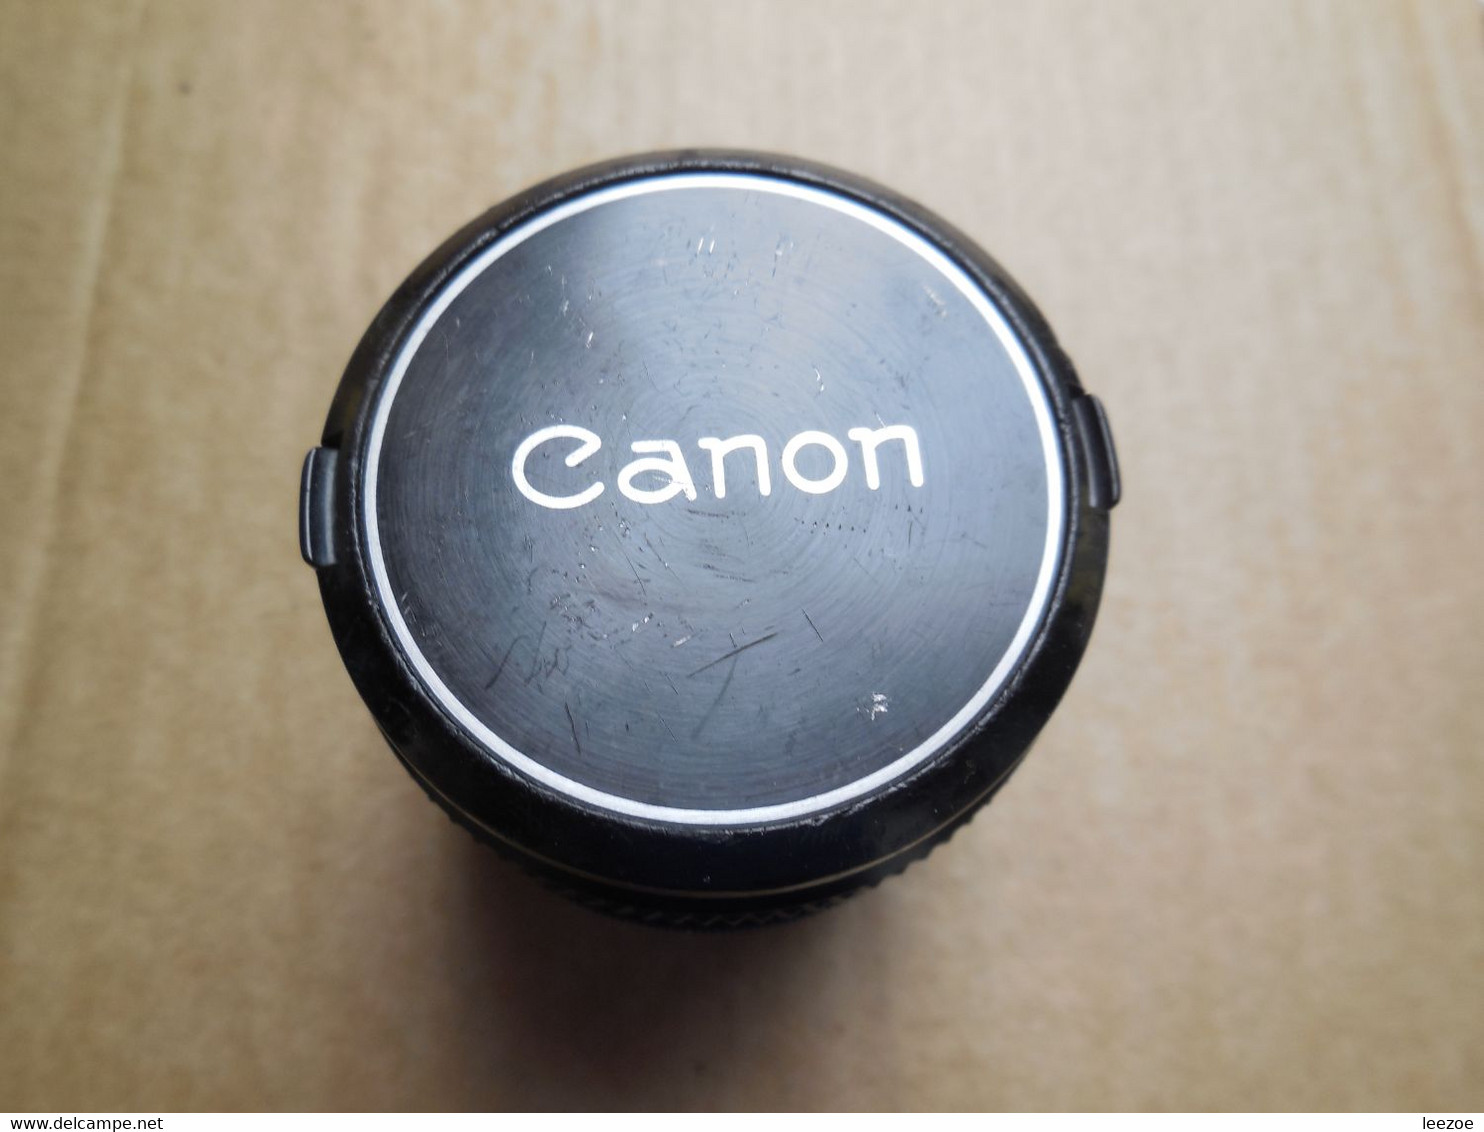 appareil photo CANON FT 50mm 1:1.8 + objectifs 135mm et 28mm + accessoires....................PIN10.22